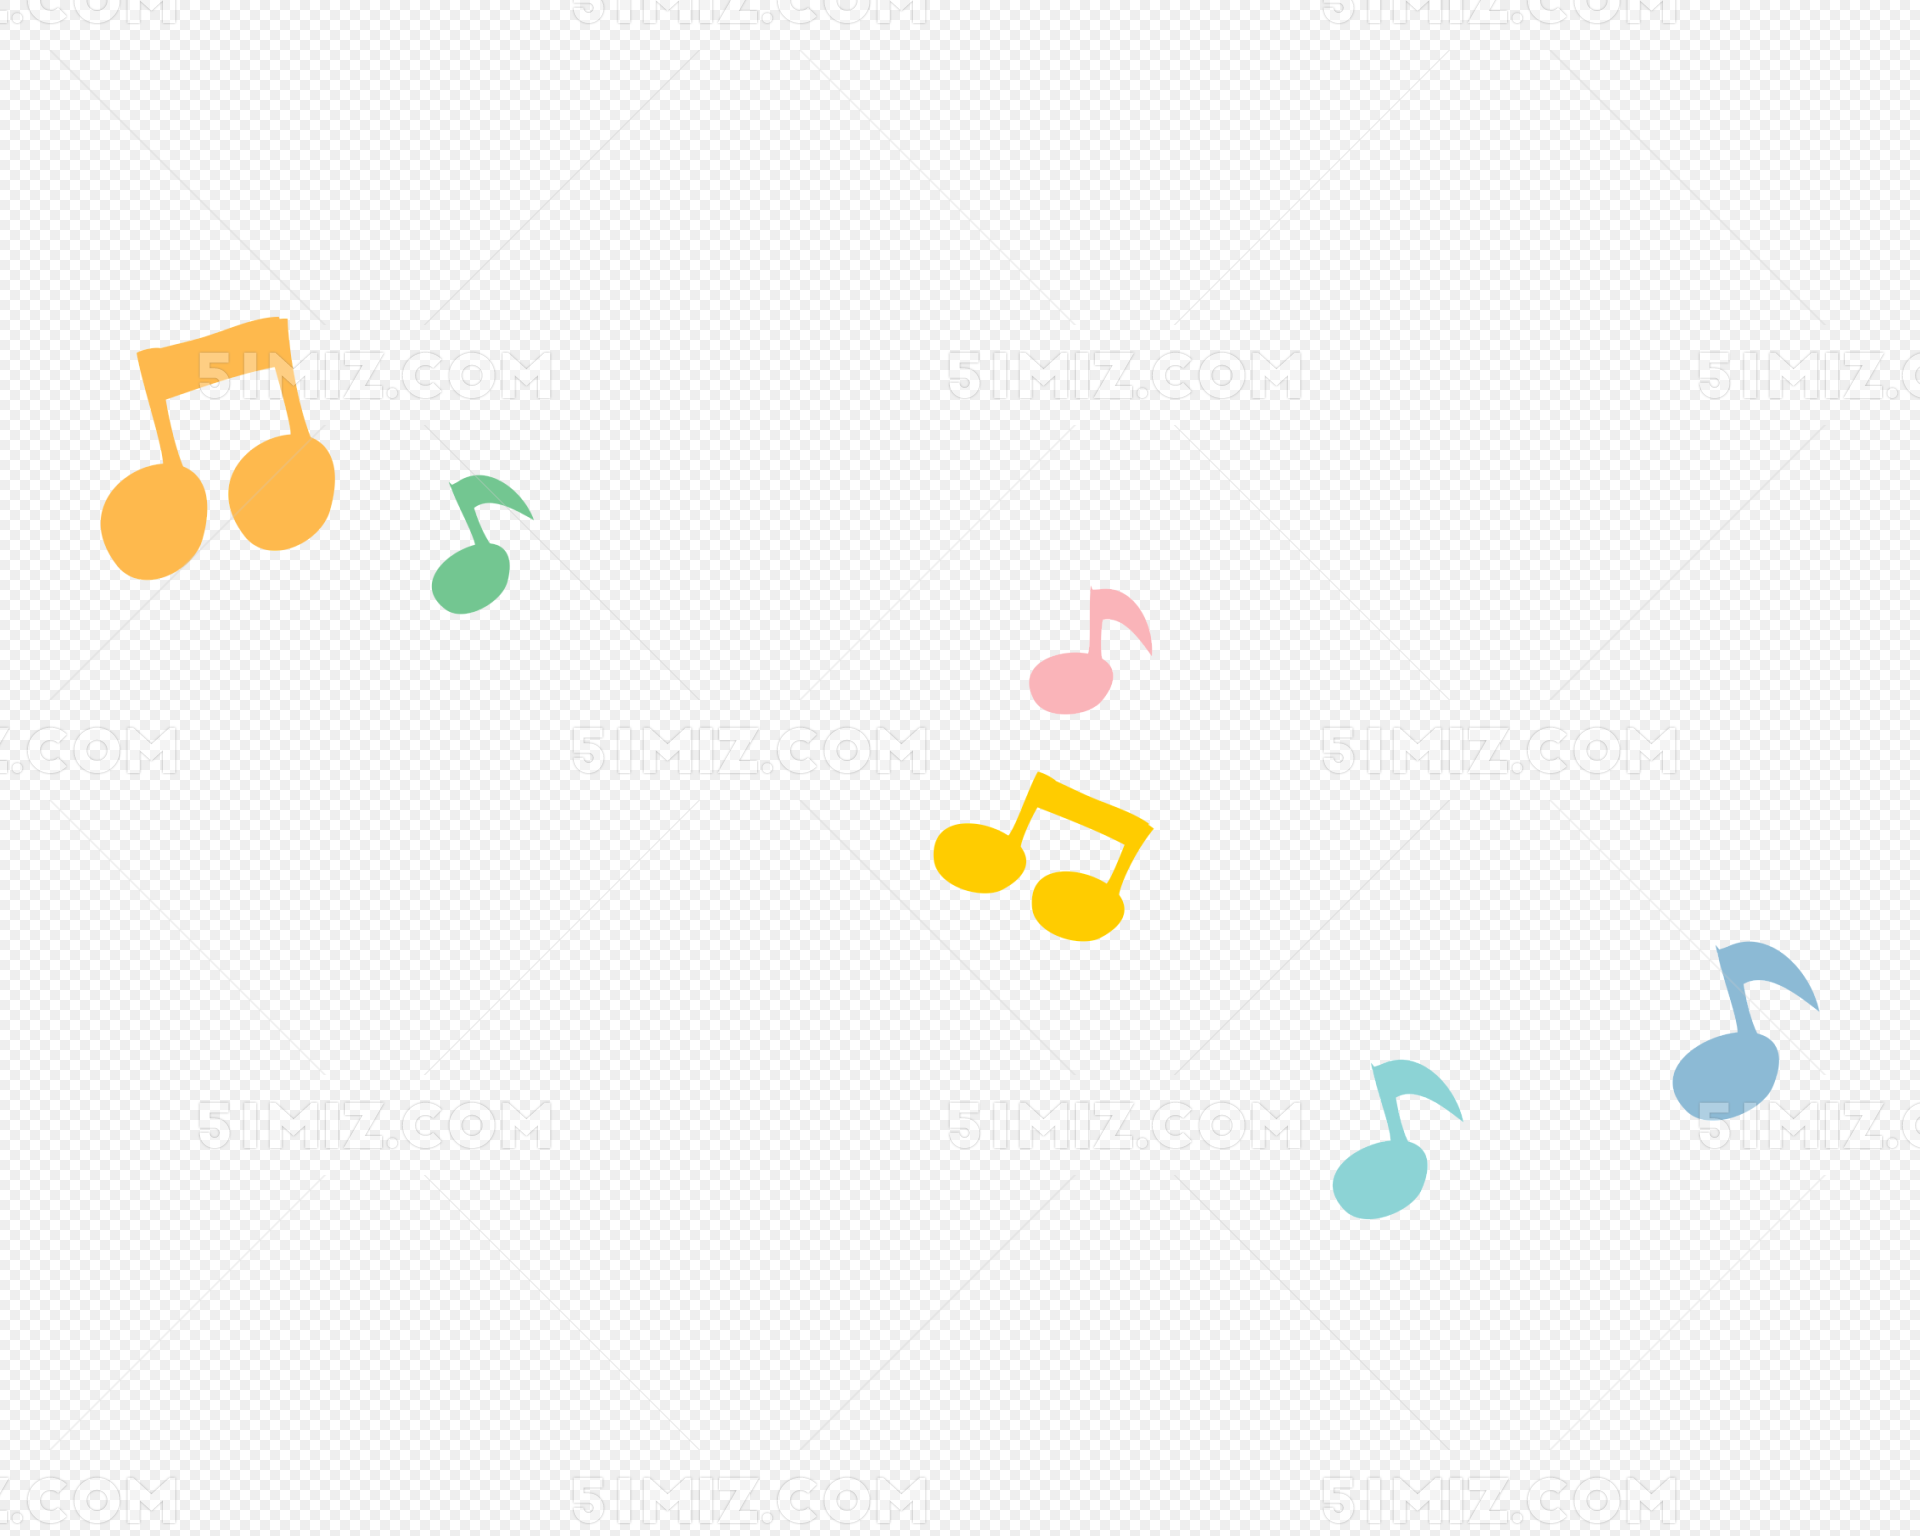 矢量音乐符号图片素材免费下载 - 觅知网